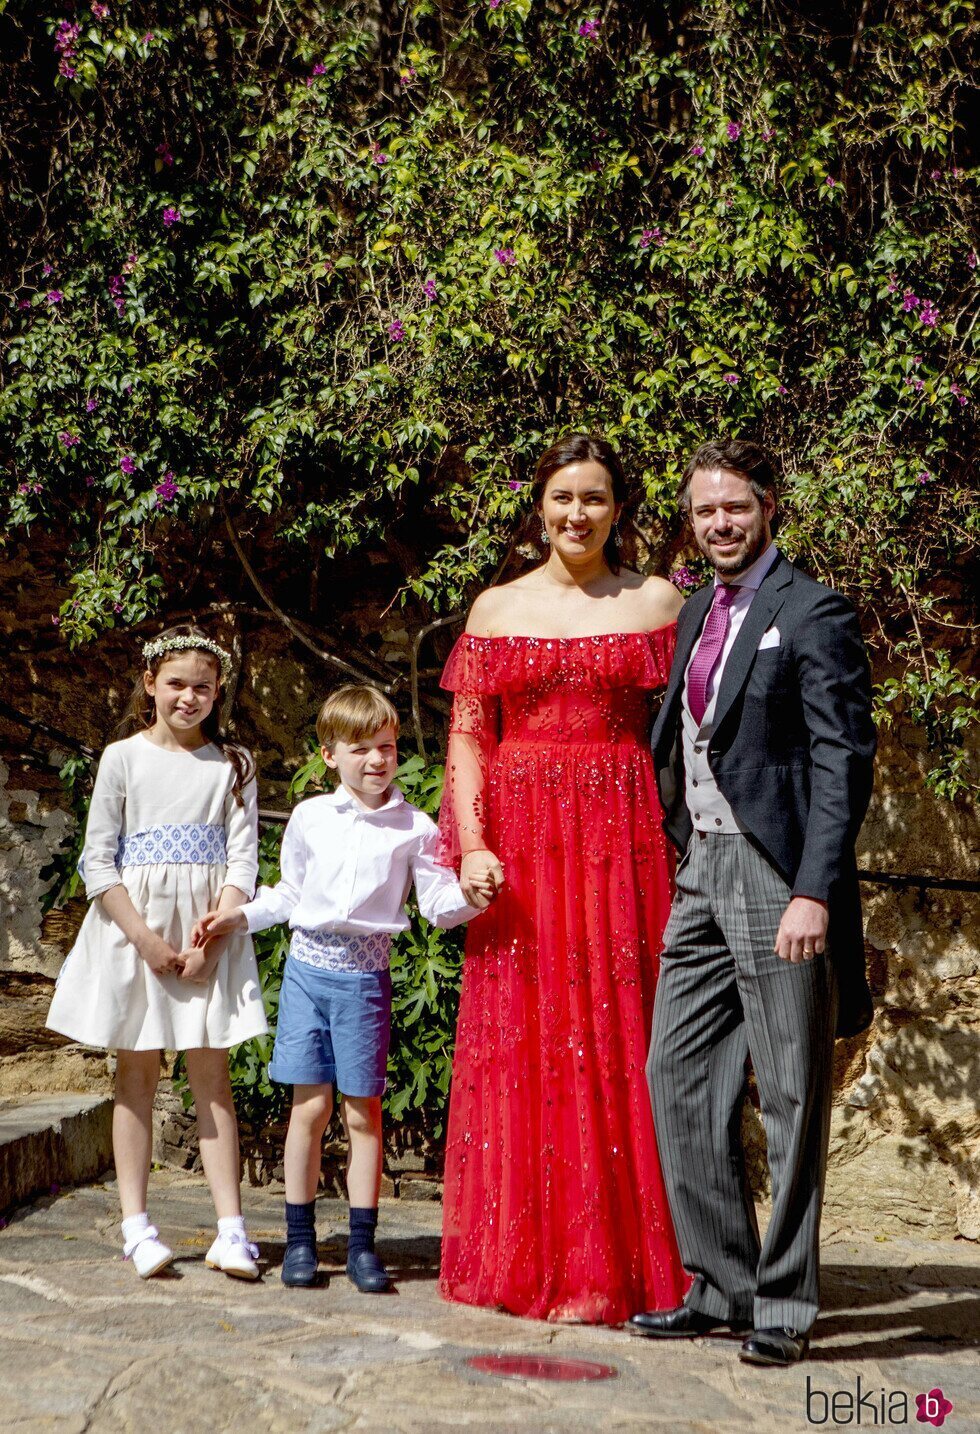 El Príncipe Félix de Luxemburgo, su mujer Claire y sus hijos Amalia y Liam en la boda religiosa de la Princesa Alexandra de Luxemburgo y Nicolas Bagory